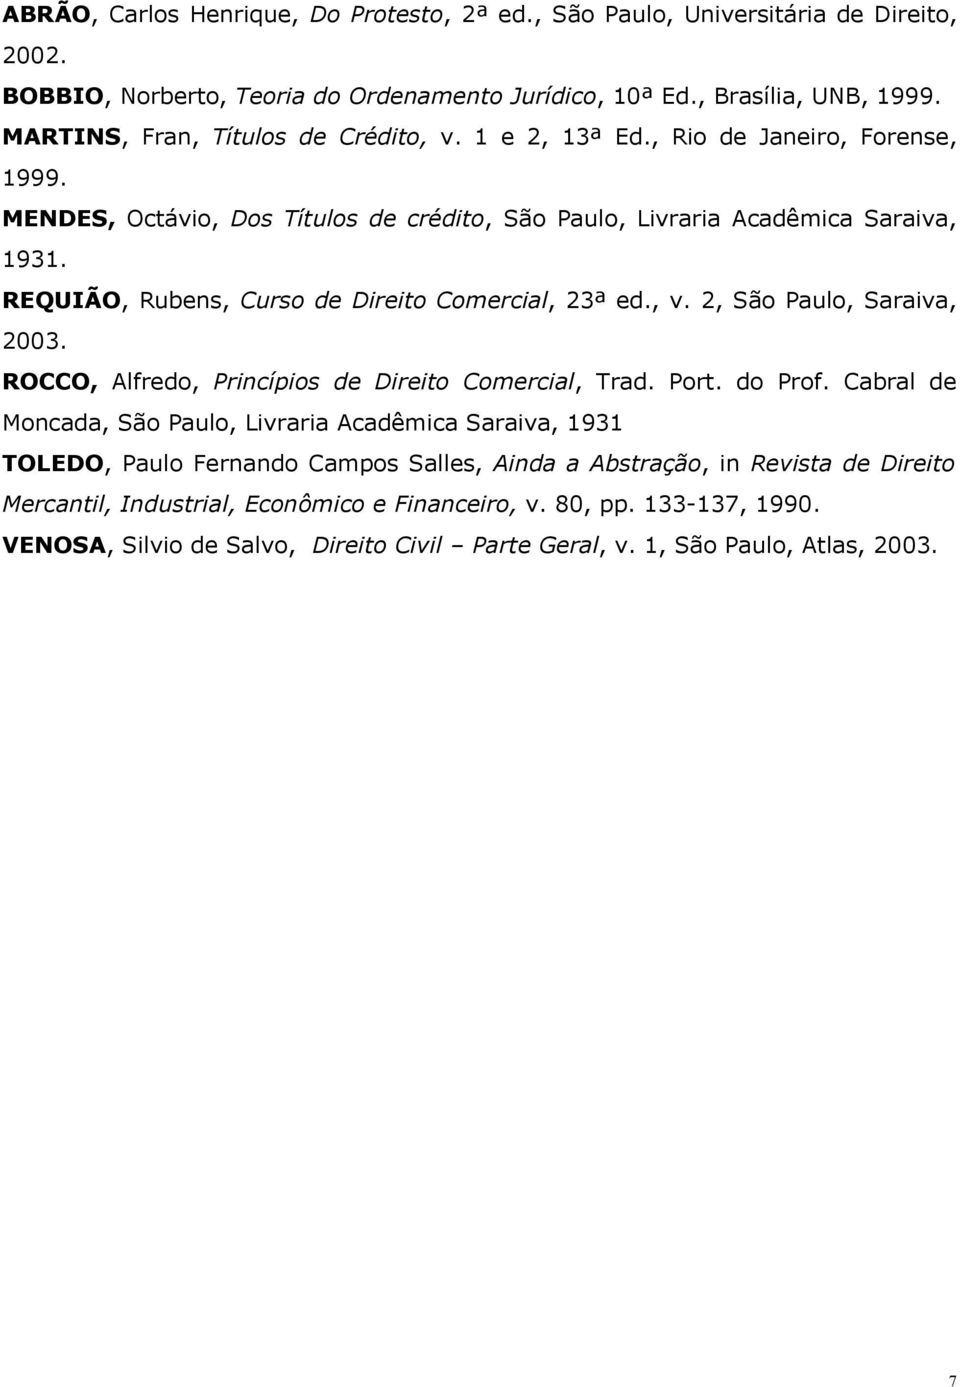 REQUIÃO, Rubens, Curso de Direito Comercial, 23ª ed., v. 2, São Paulo, Saraiva, 2003. ROCCO, Alfredo, Princípios de Direito Comercial, Trad. Port. do Prof.